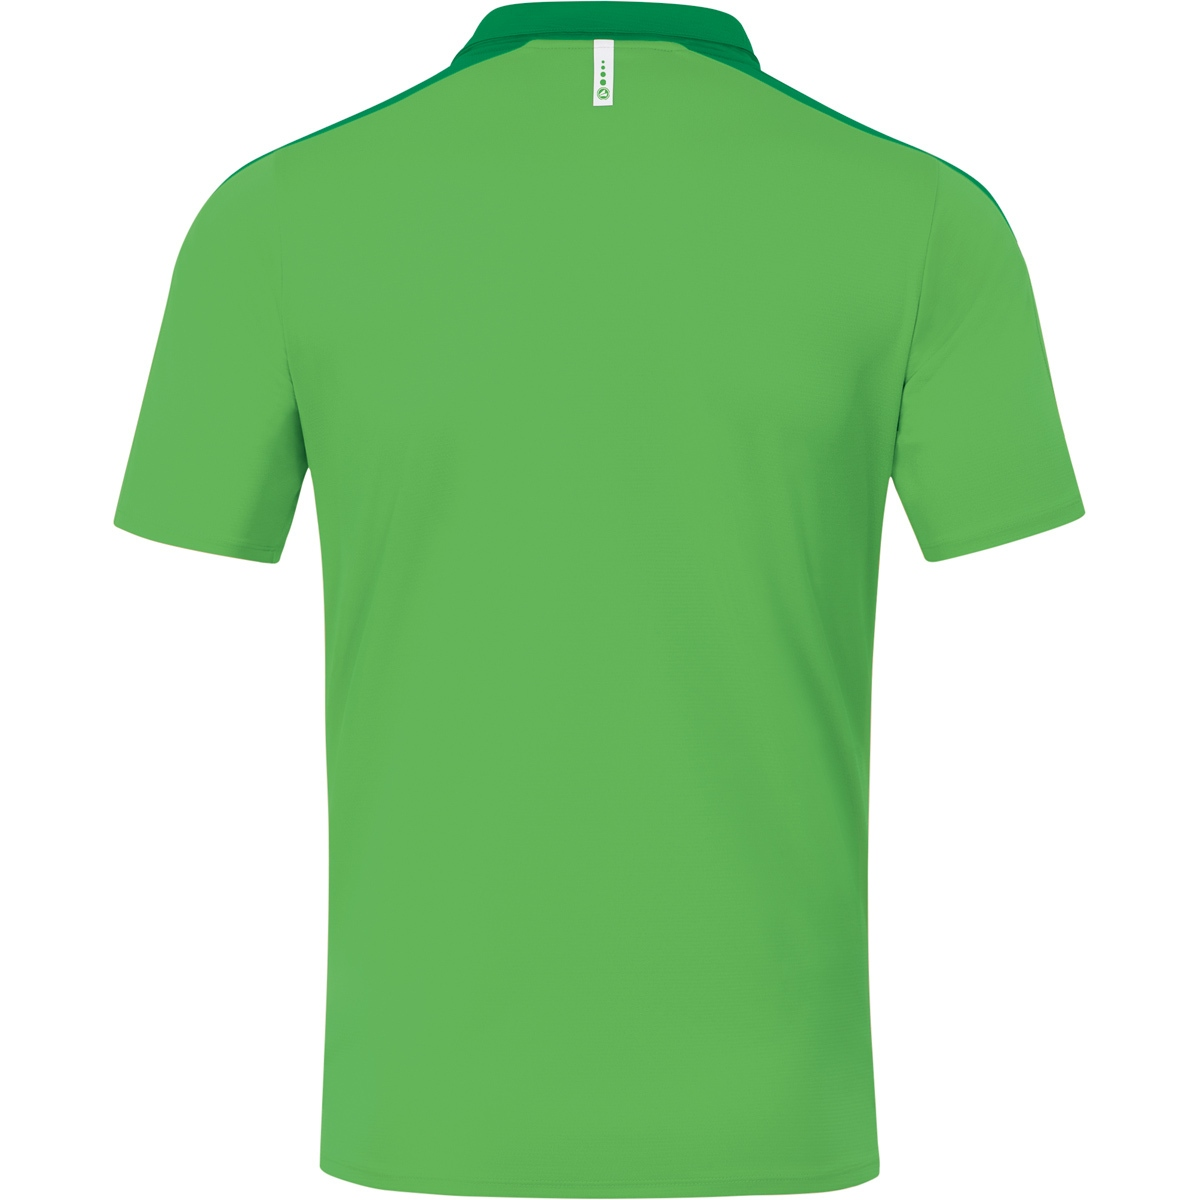 Kinder, Polo Gr. Champ soft green/sportgrün, 6320 2.0 JAKO 164,